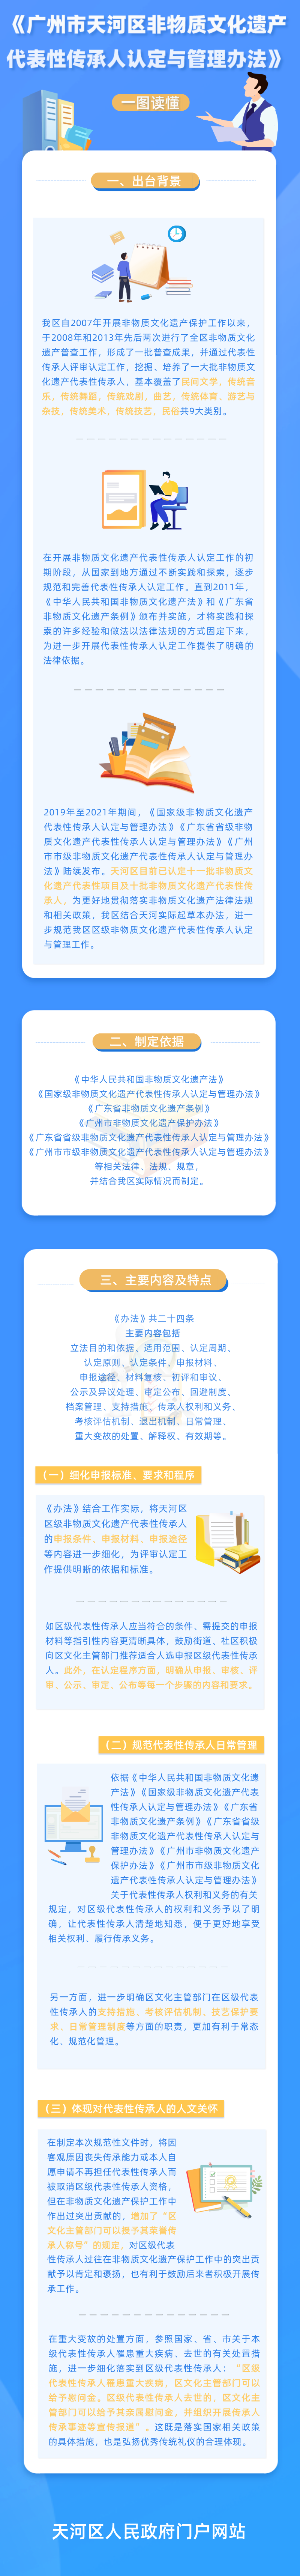 一图读懂《广州市天河区非物质文化遗产代表性传承人认定与管理办法》.png